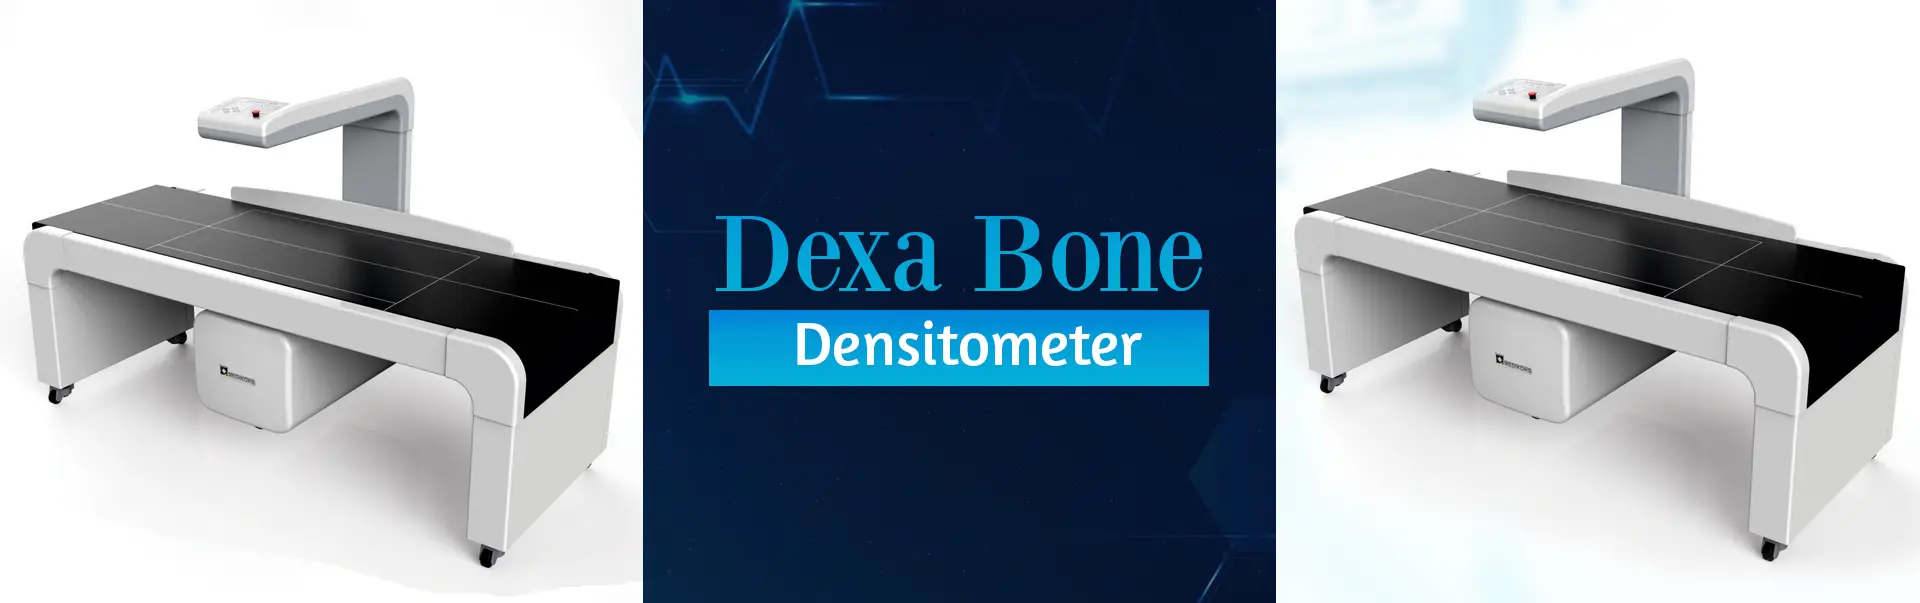 Dexa Bone Densitometer Manufacturers in Pondicherry